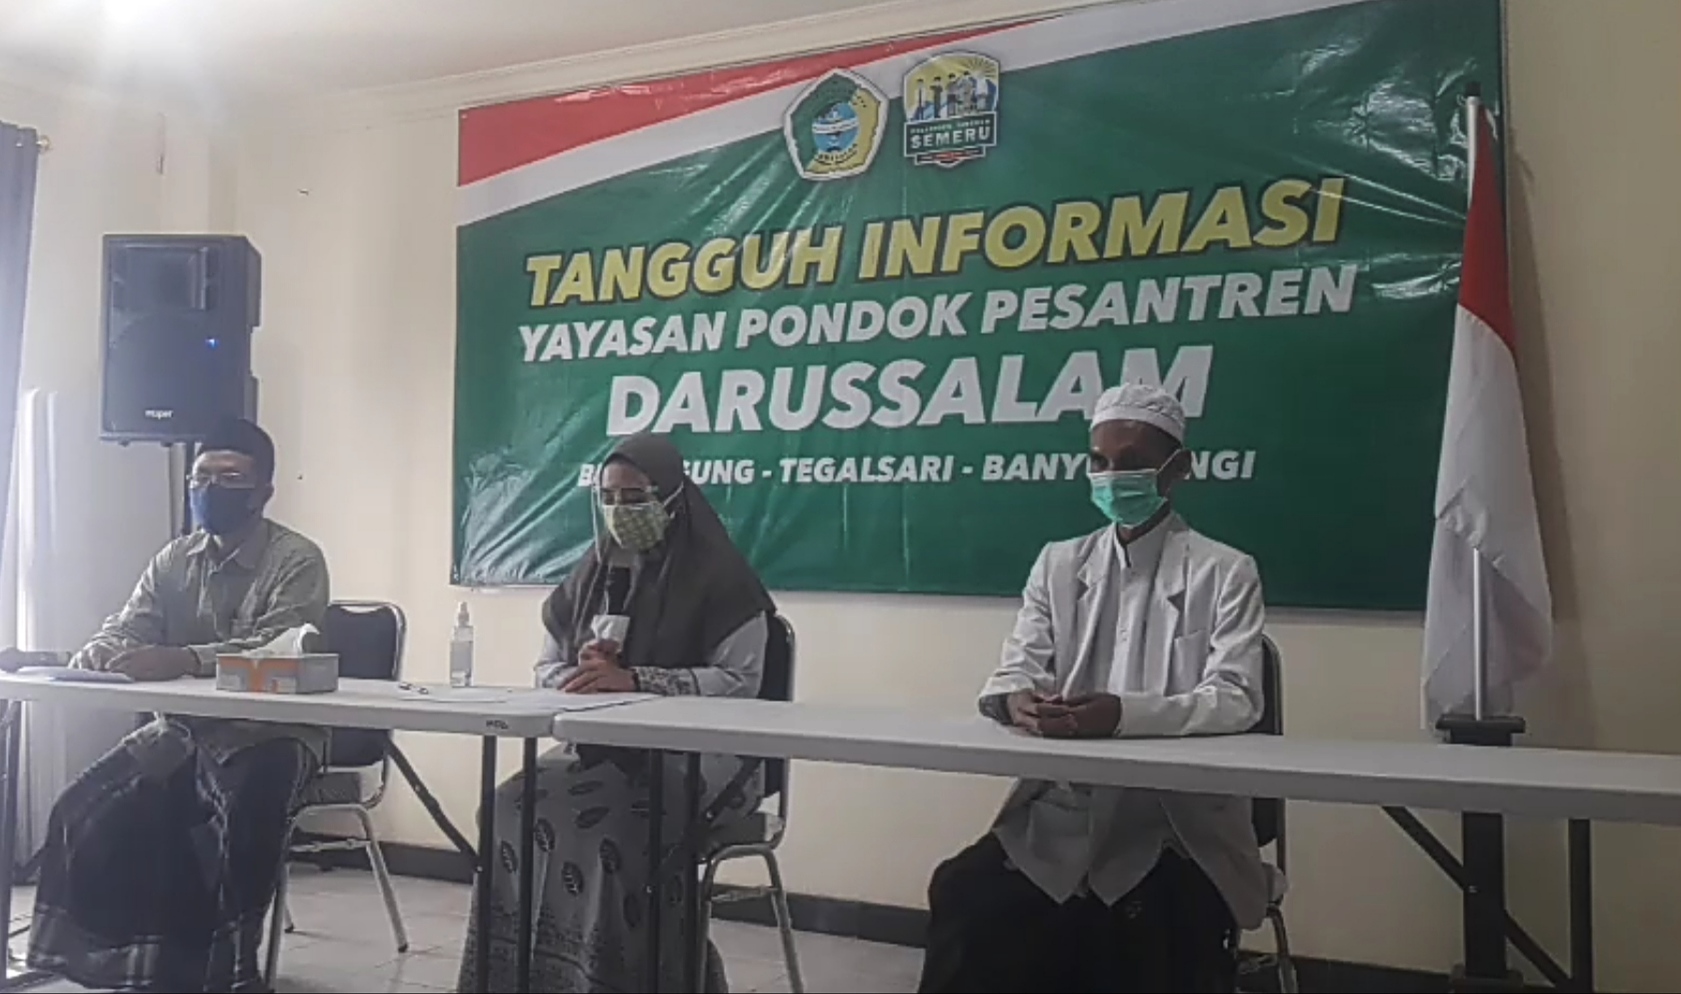 Screenshot press conference yang dilakukan pihak pondok pesantren Darussalam, Blokagung, Tegalsari Banyuwangi yang digelar melalui Facebook, Instagram dan zoom 